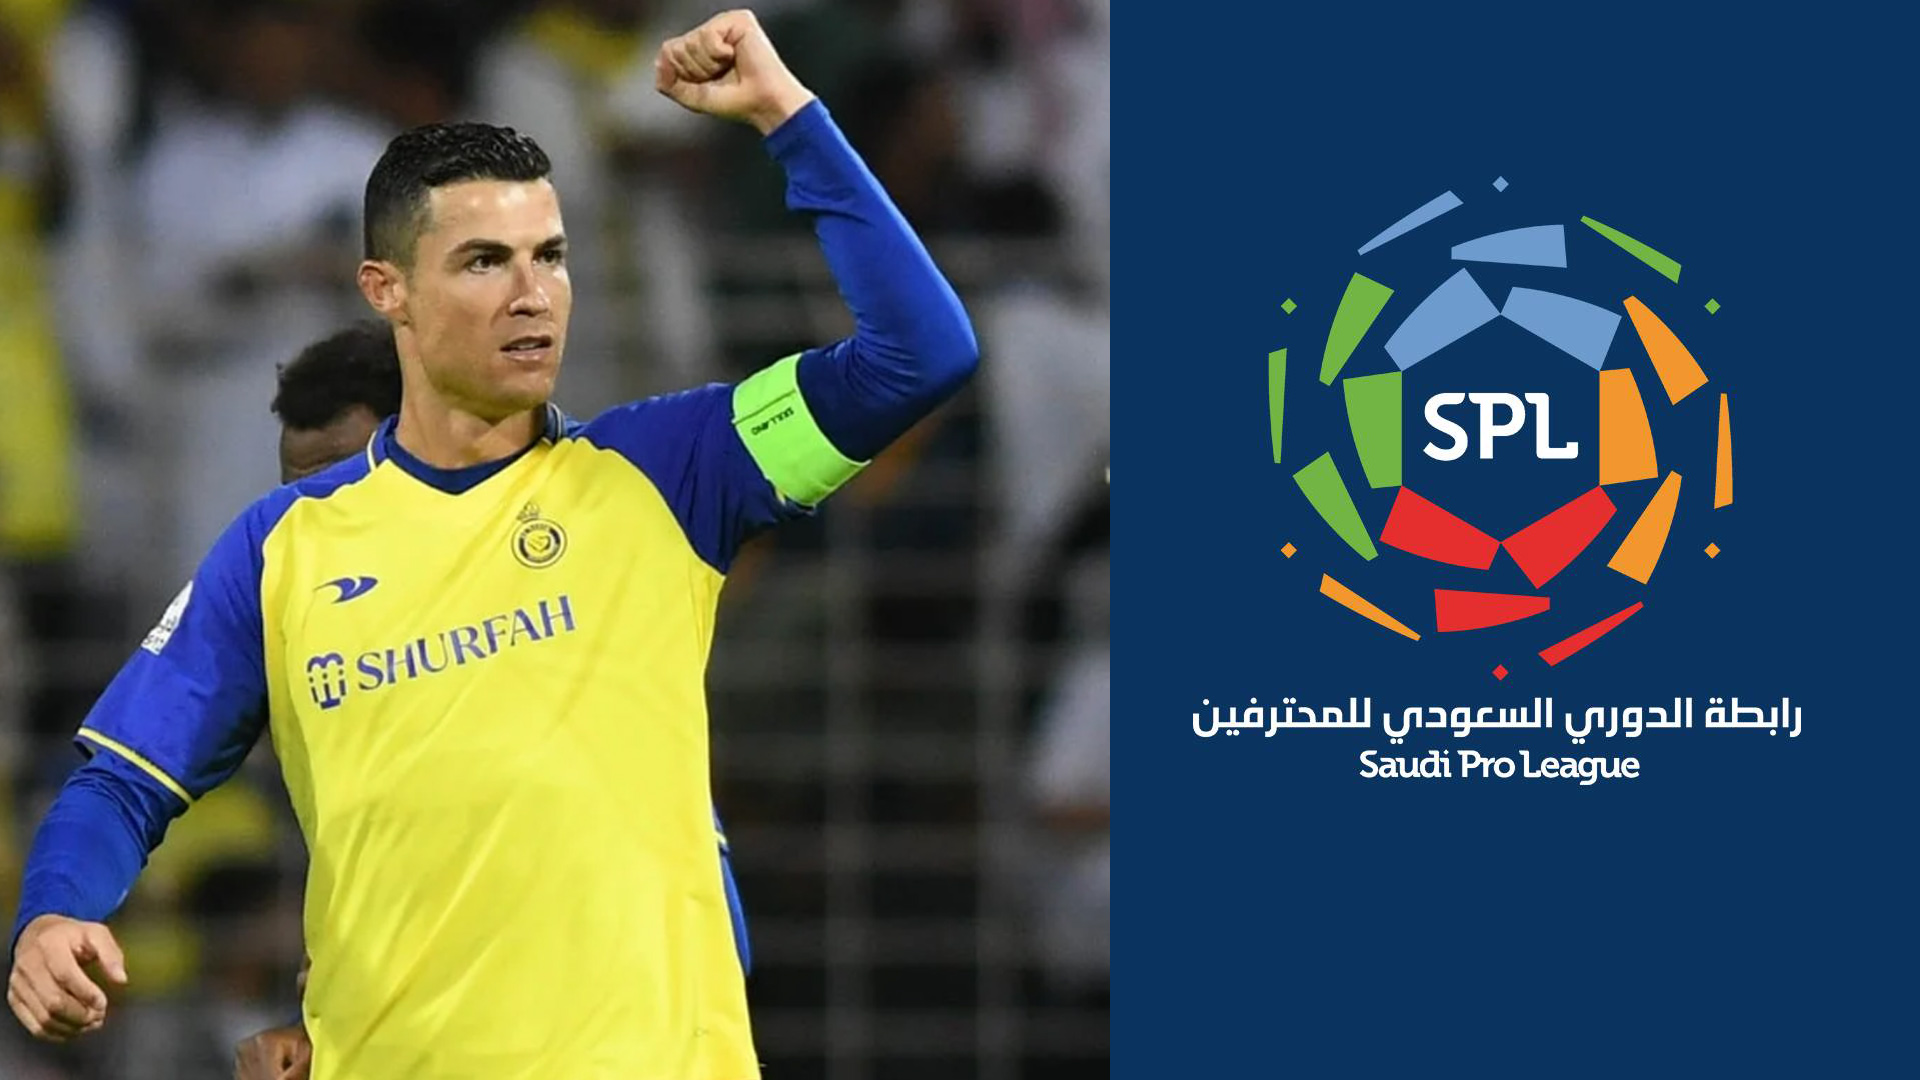 El astro portugués sigue generando un gran impacto en el fútbol de Arabia Saudí.